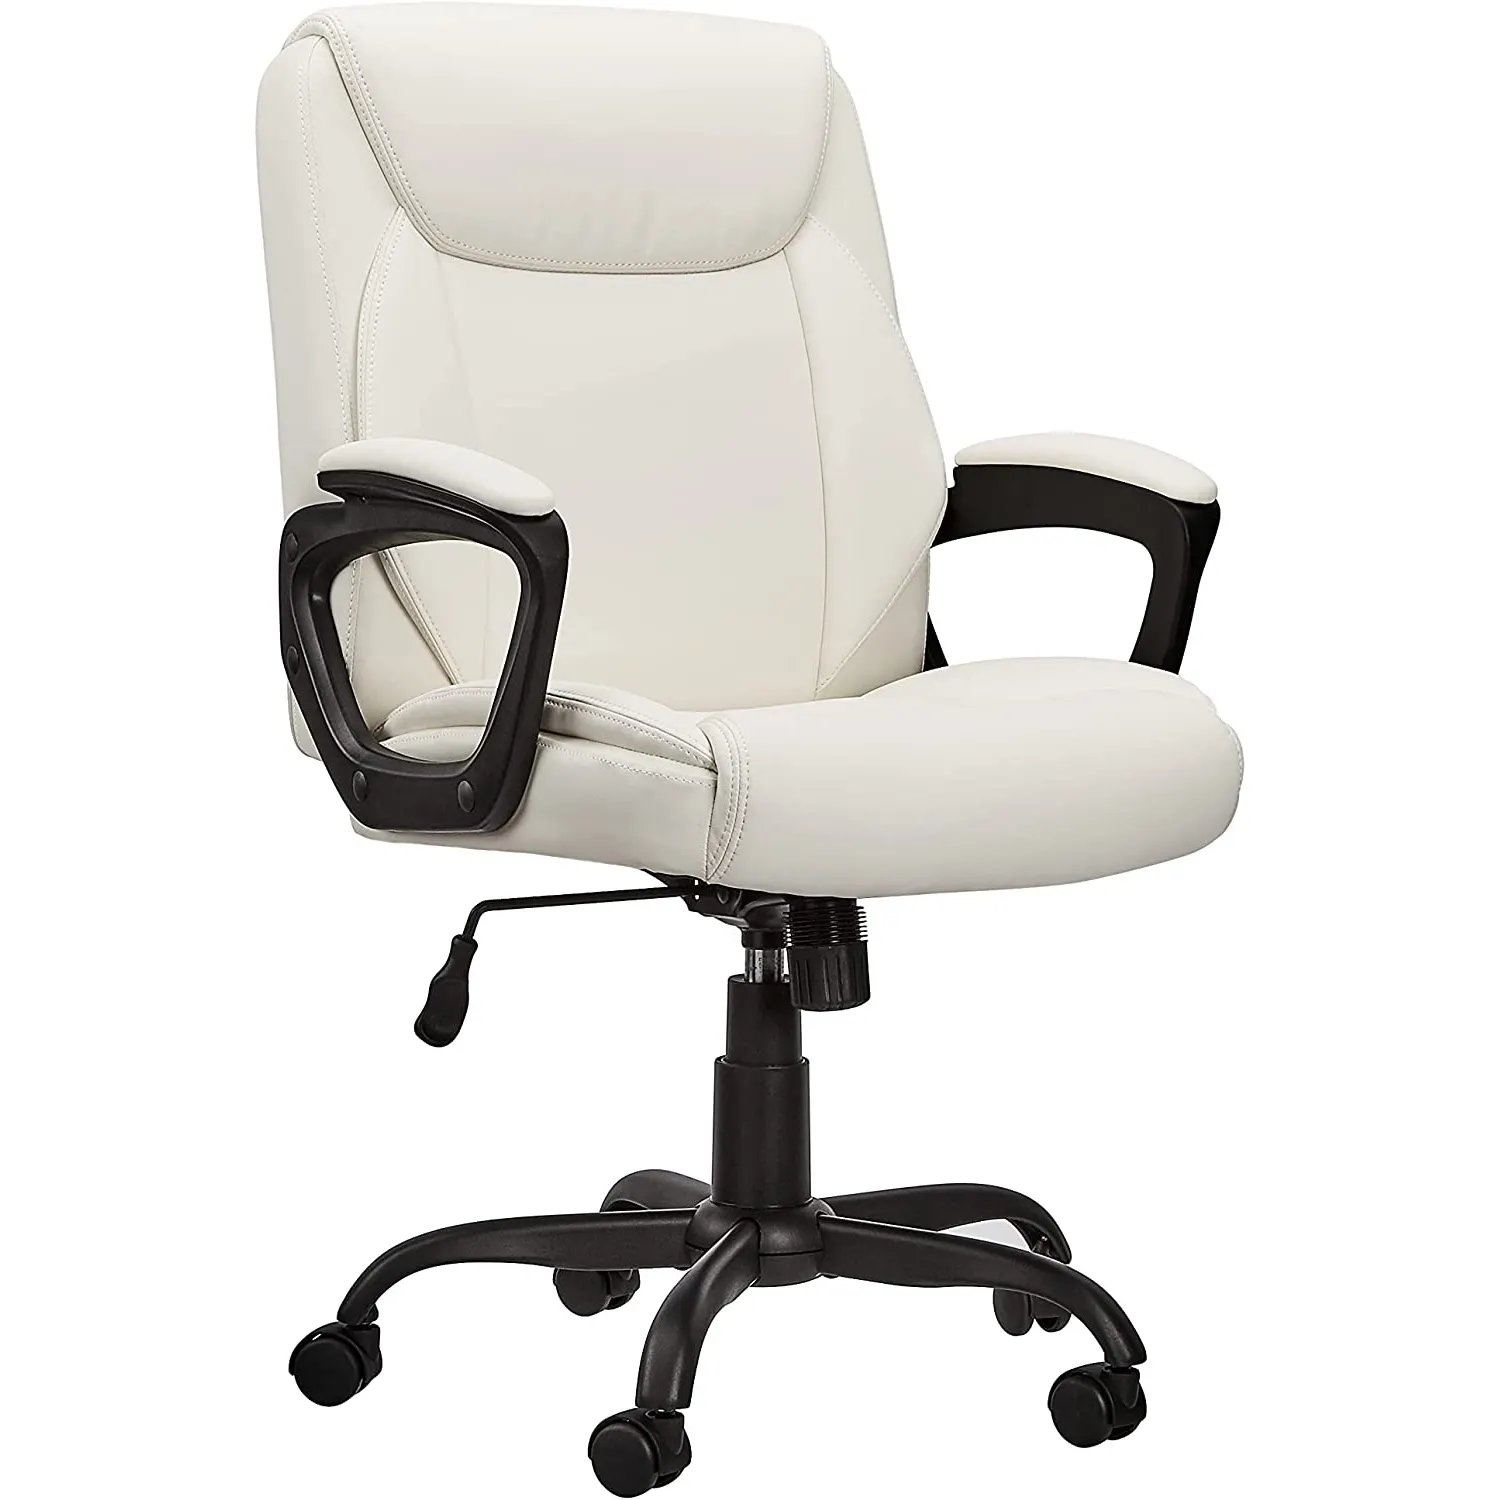 التجاري العادي التنفيذي sillas دي oficina أرخص مكتب الكراسي الأبيض منتصف عودة بو الجلود الفاخرة كرسي مكتب